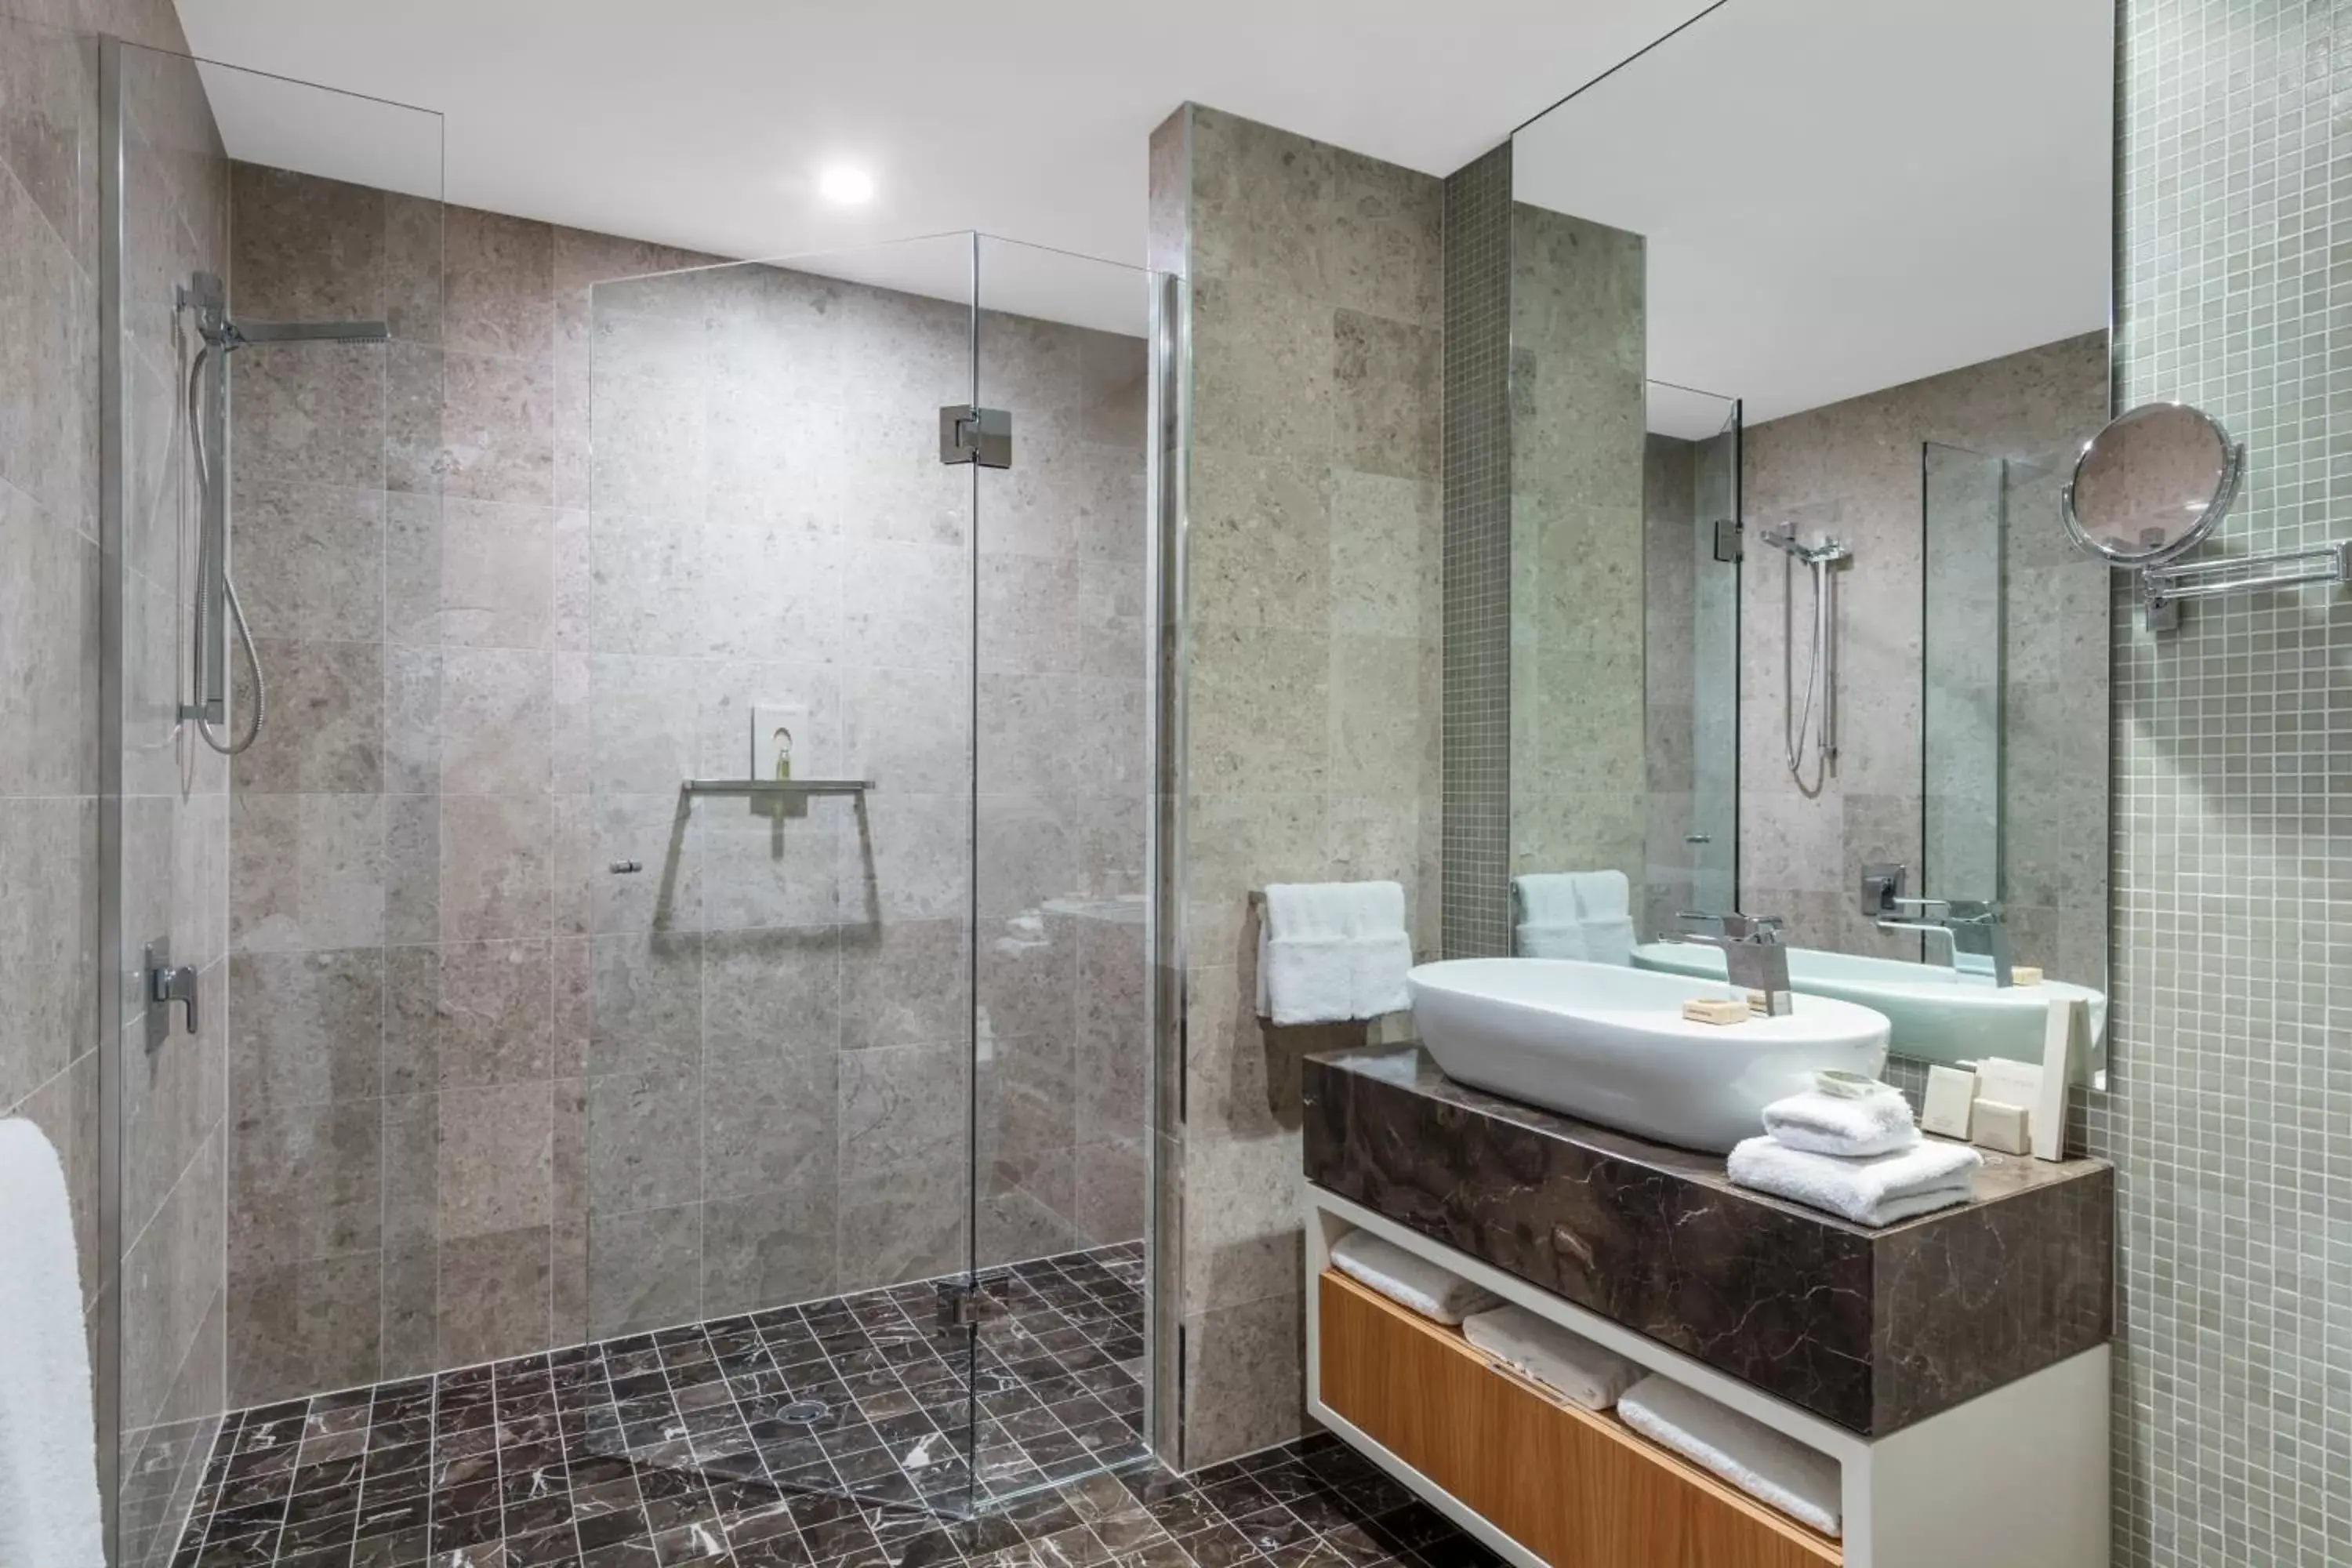 Bathroom in RACV Noosa Resort